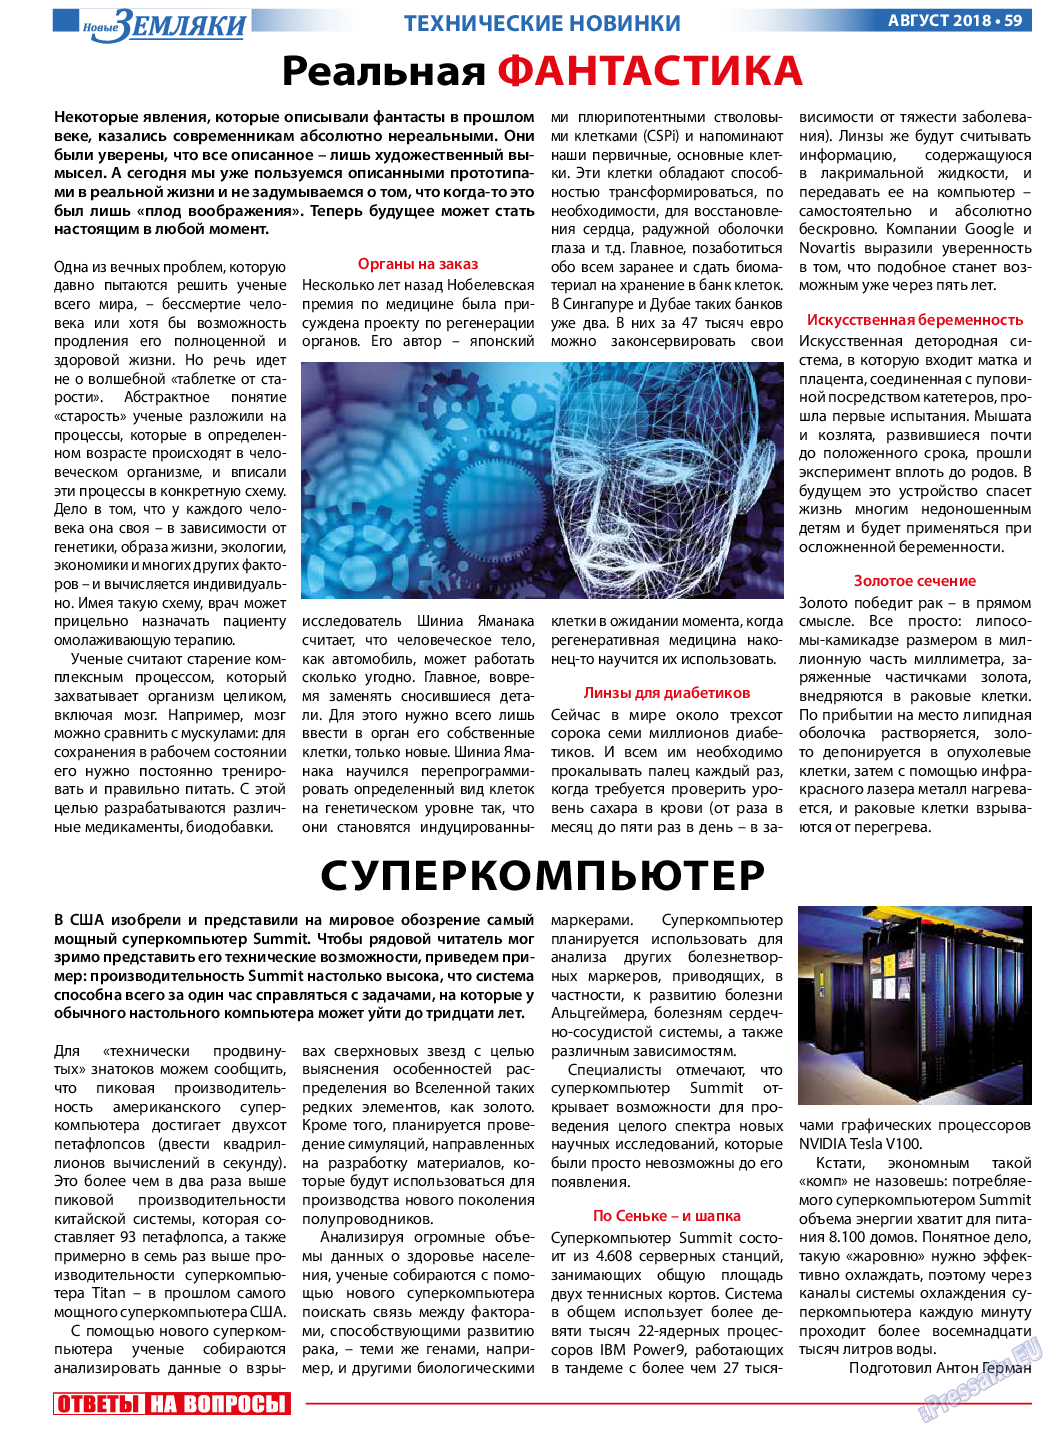 Новые Земляки (газета). 2018 год, номер 8, стр. 59